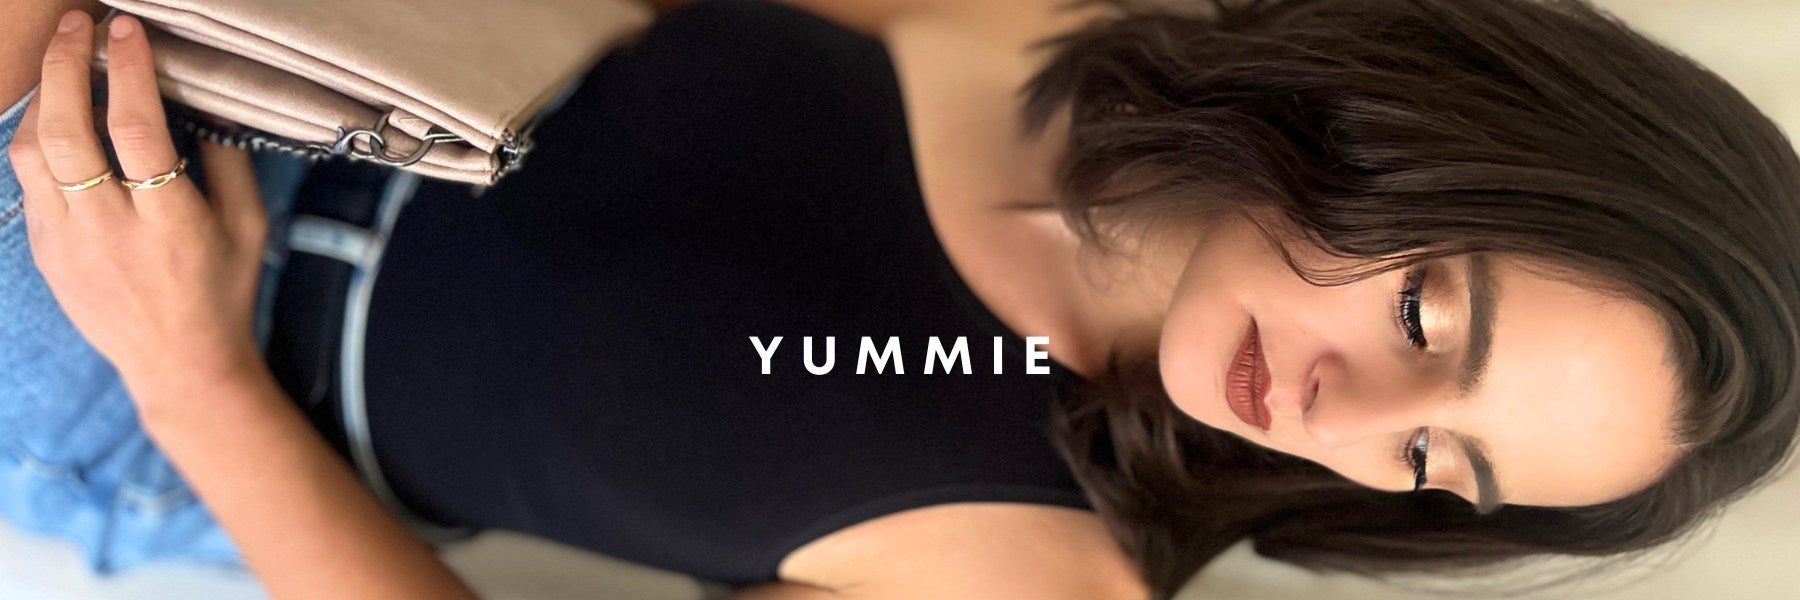 Yummie 5-piece Seamless Wardrobe Essentials - 8862859